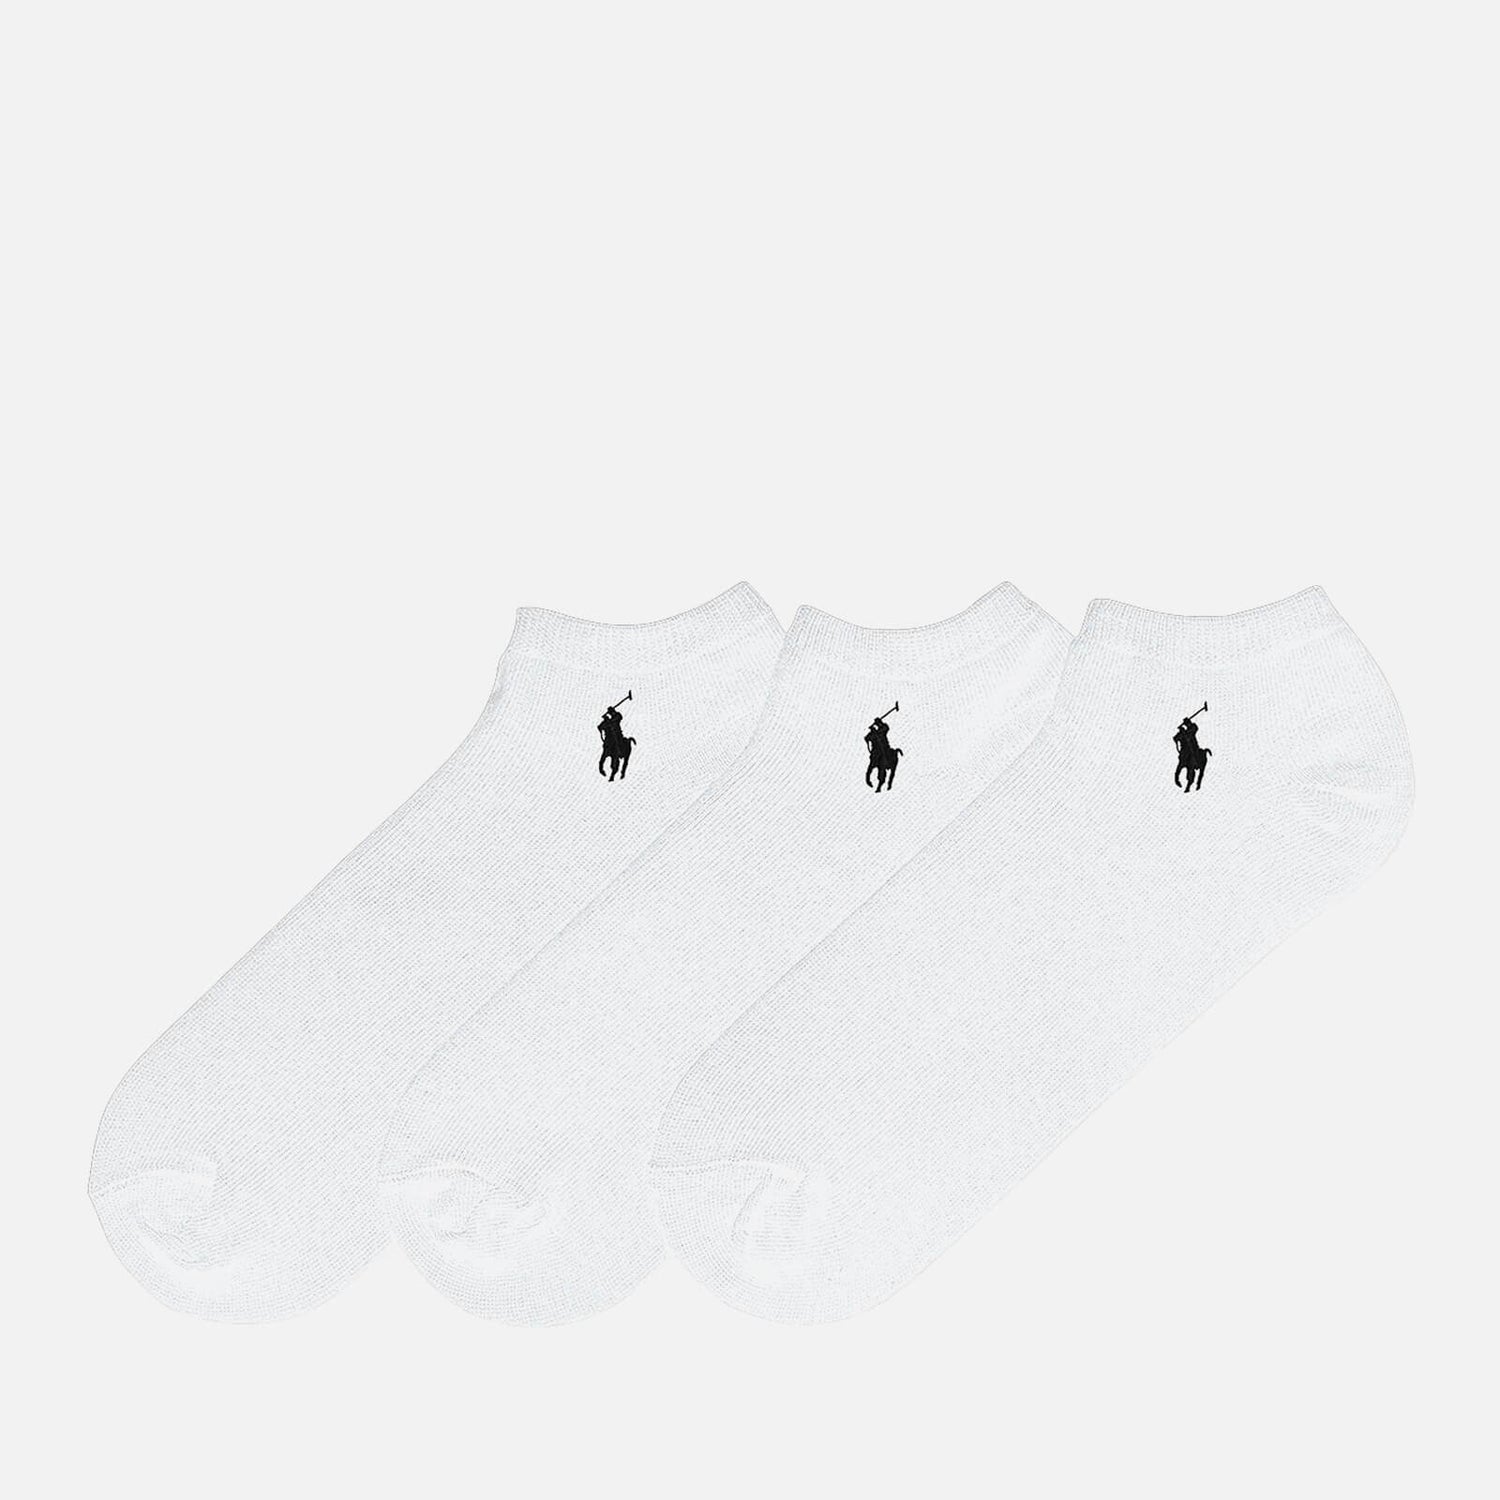 Polo Ralph Lauren Women's Socks - White